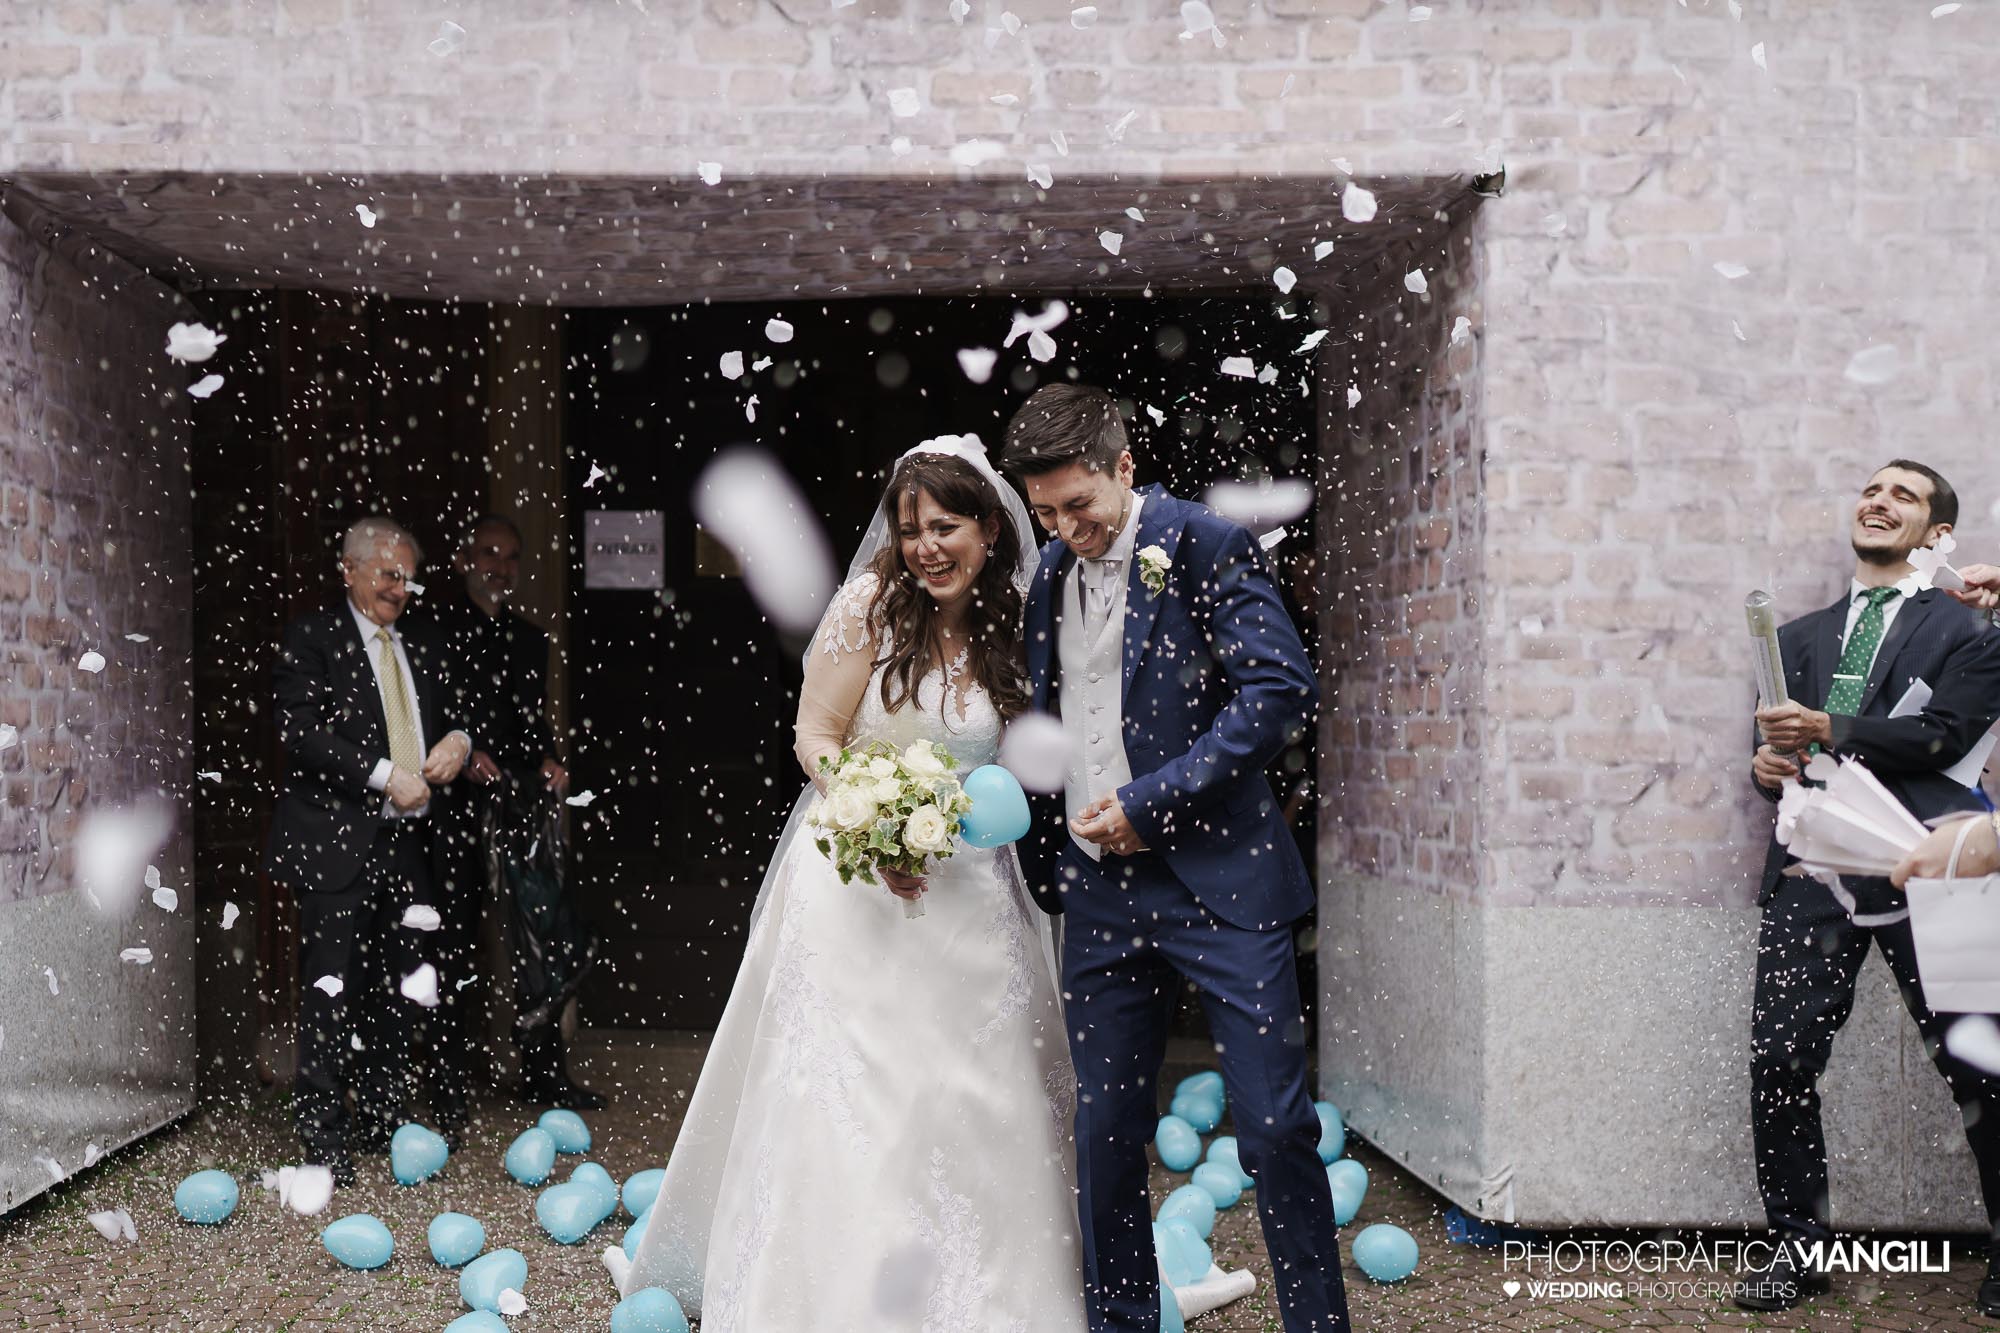 040 foto nozze wedding reportage sposi rito religioso lancio riso uscita chiesa milano chiara oliviero